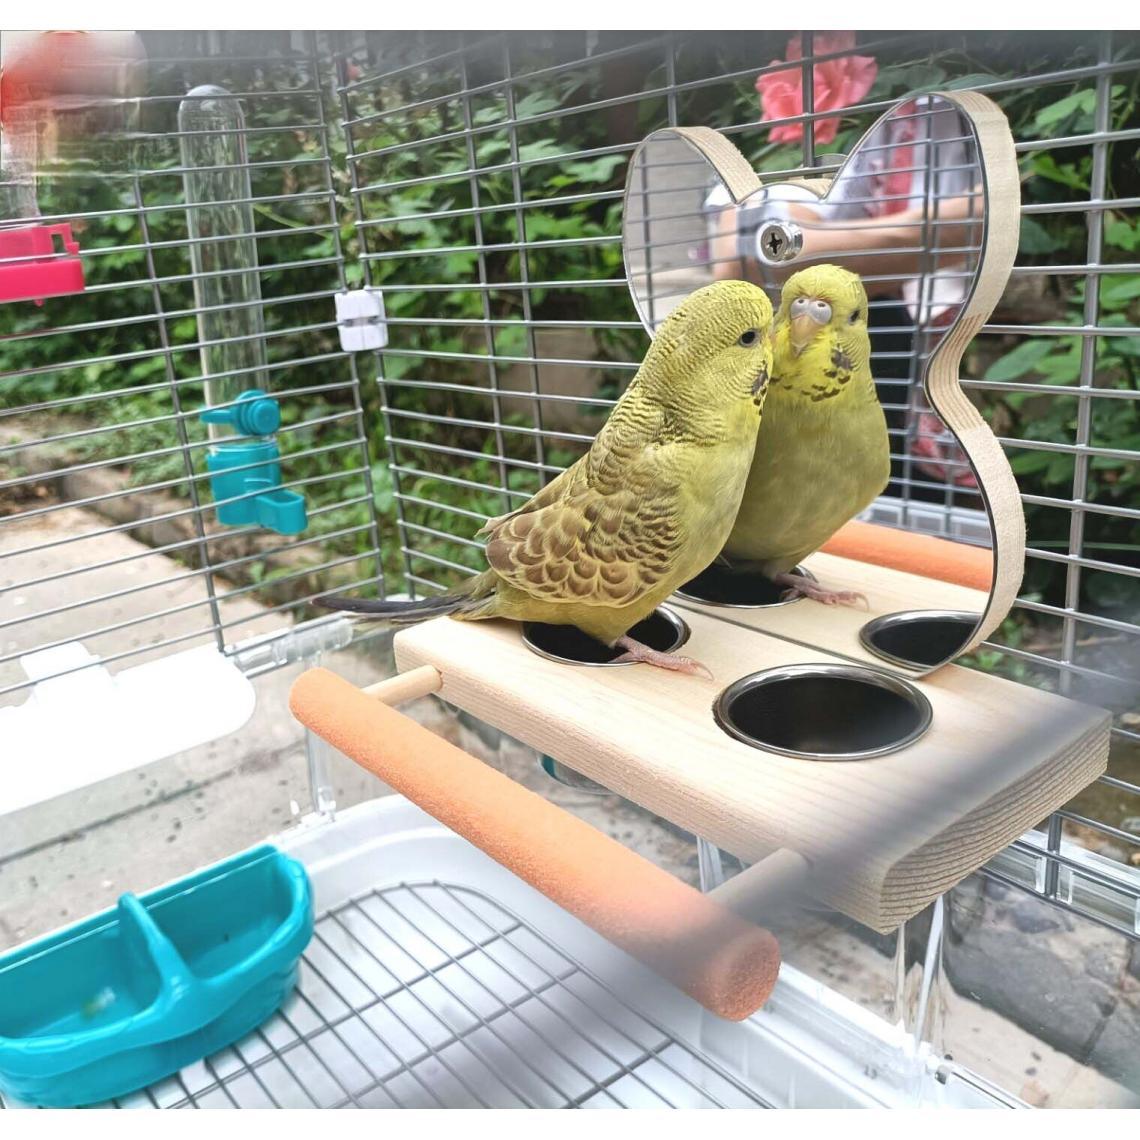 Universal - Perroquet miroir acier inoxydable bassin de nourriture jouets éducatifs griffes d'oiseaux broyage galerie poteaux cage d'oiseaux accessoires animaux domestiques éleveurs d'oiseaux |(Jaune) - Gamelle pour chien